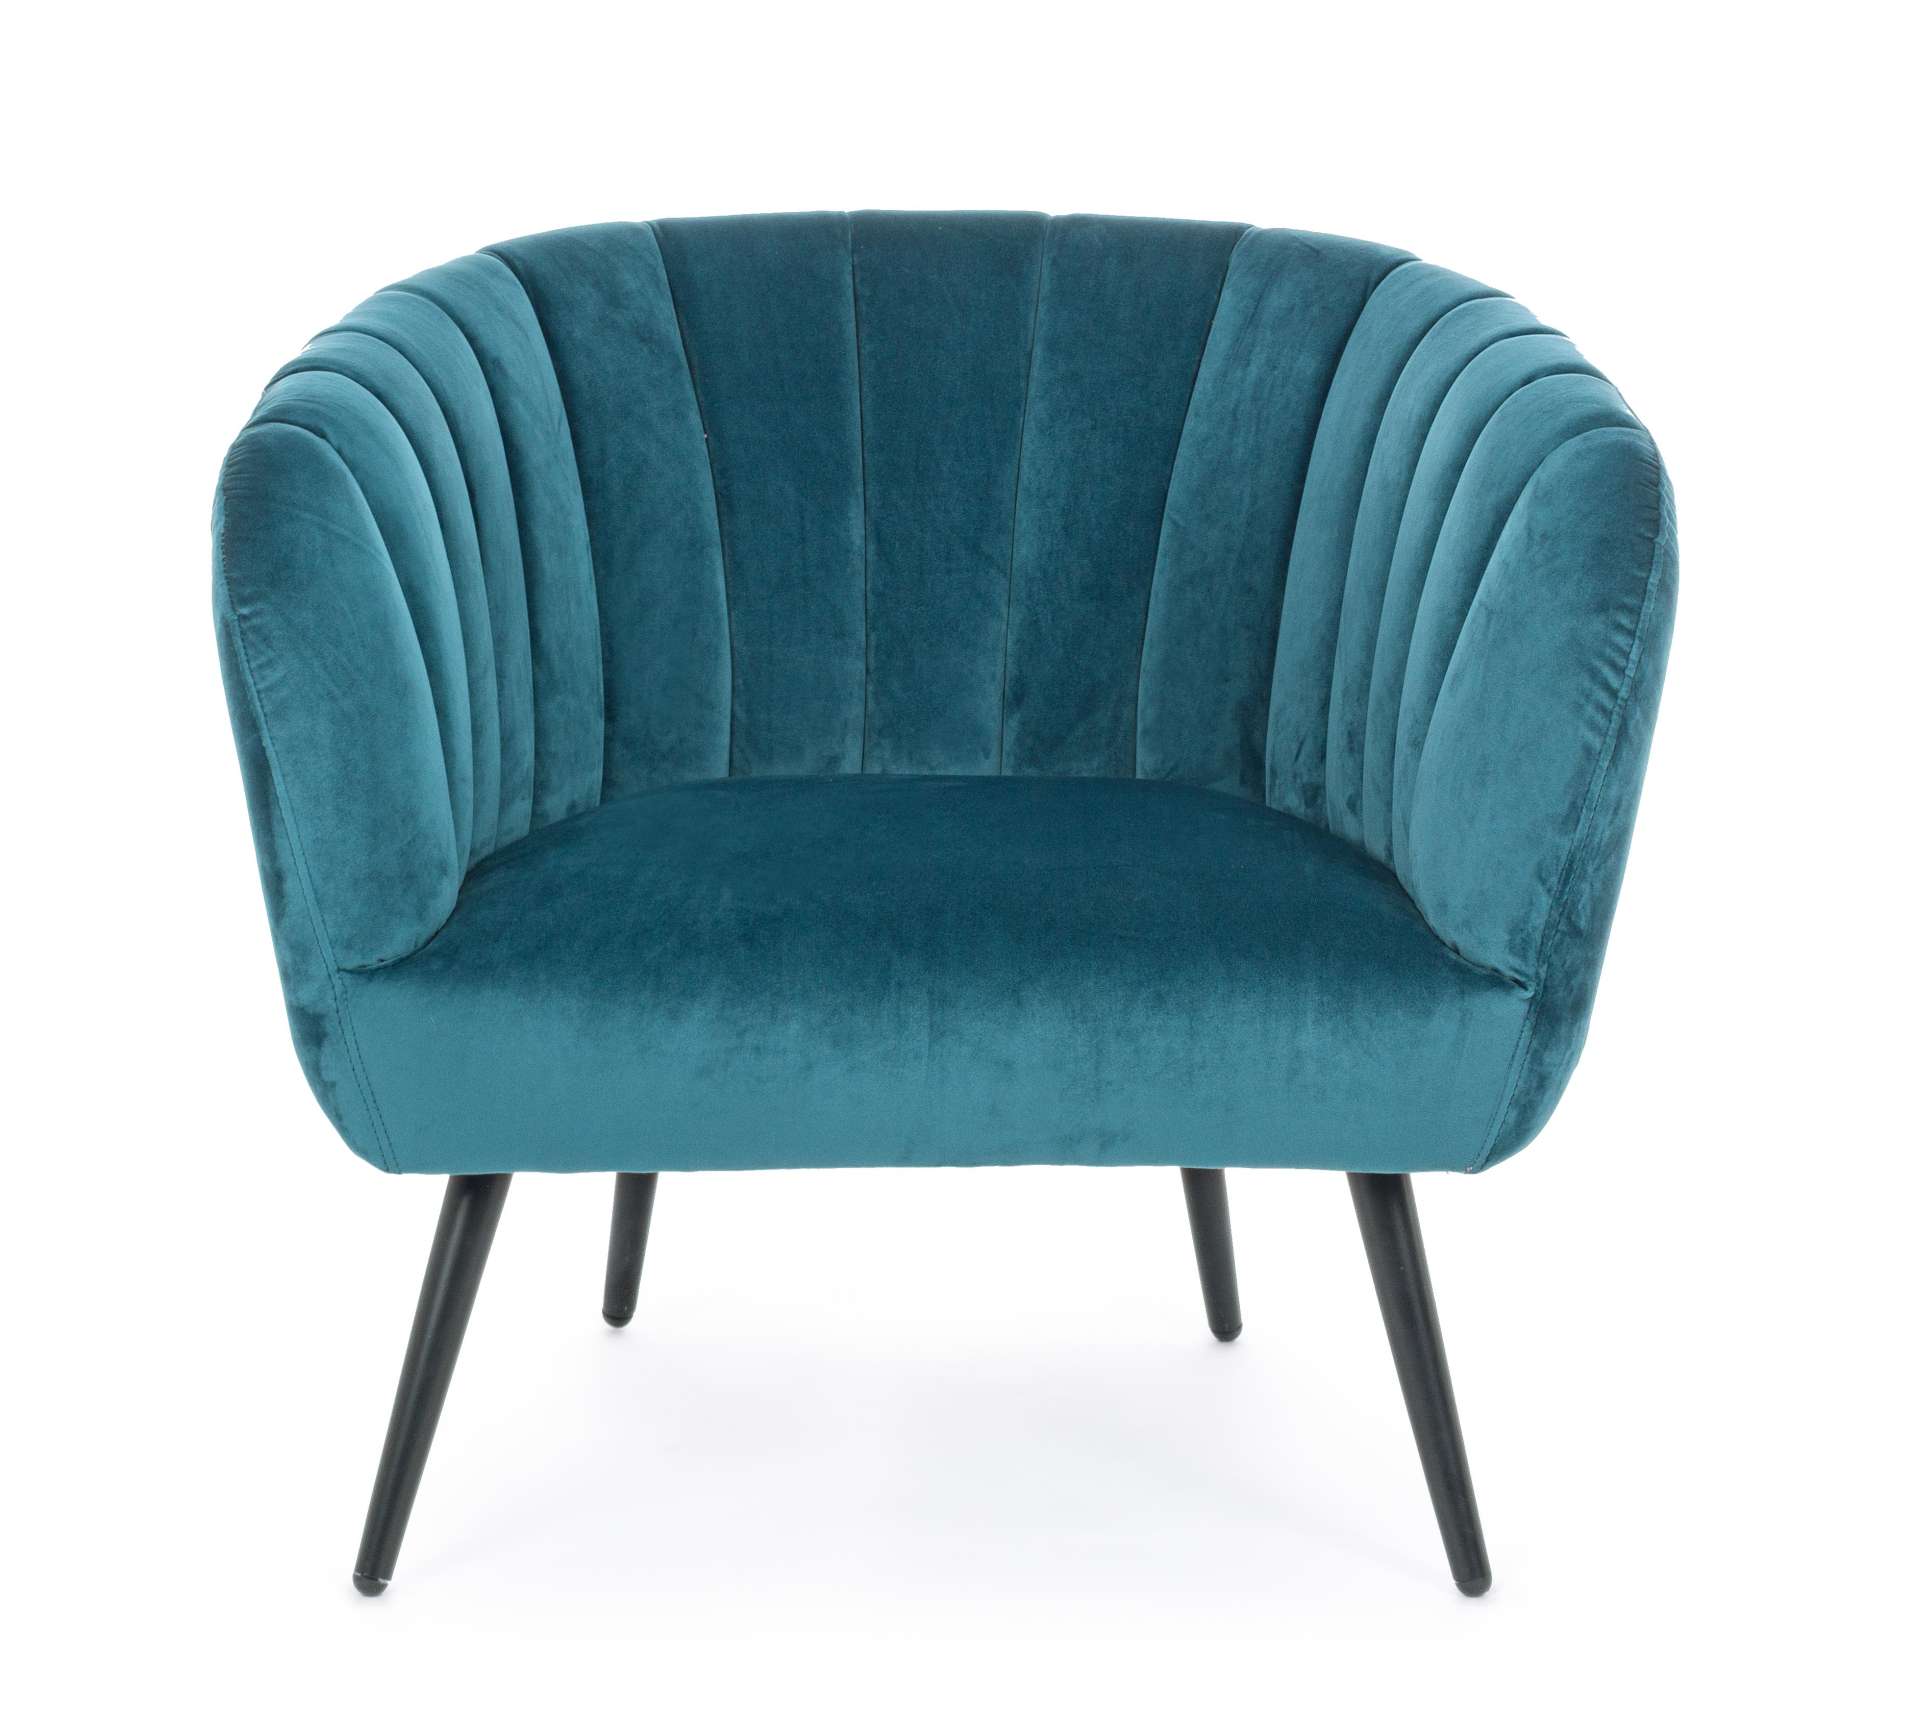 Der Sessel Avril überzeugt mit seinem modernen Design. Gefertigt wurde er aus Stoff in Samt-Optik, welcher einen blauen Farbton besitzt. Das Gestell ist aus Metall und hat eine schwarze Farbe. Der Sessel besitzt eine Sitzhöhe von 43 cm. Die Breite beträgt